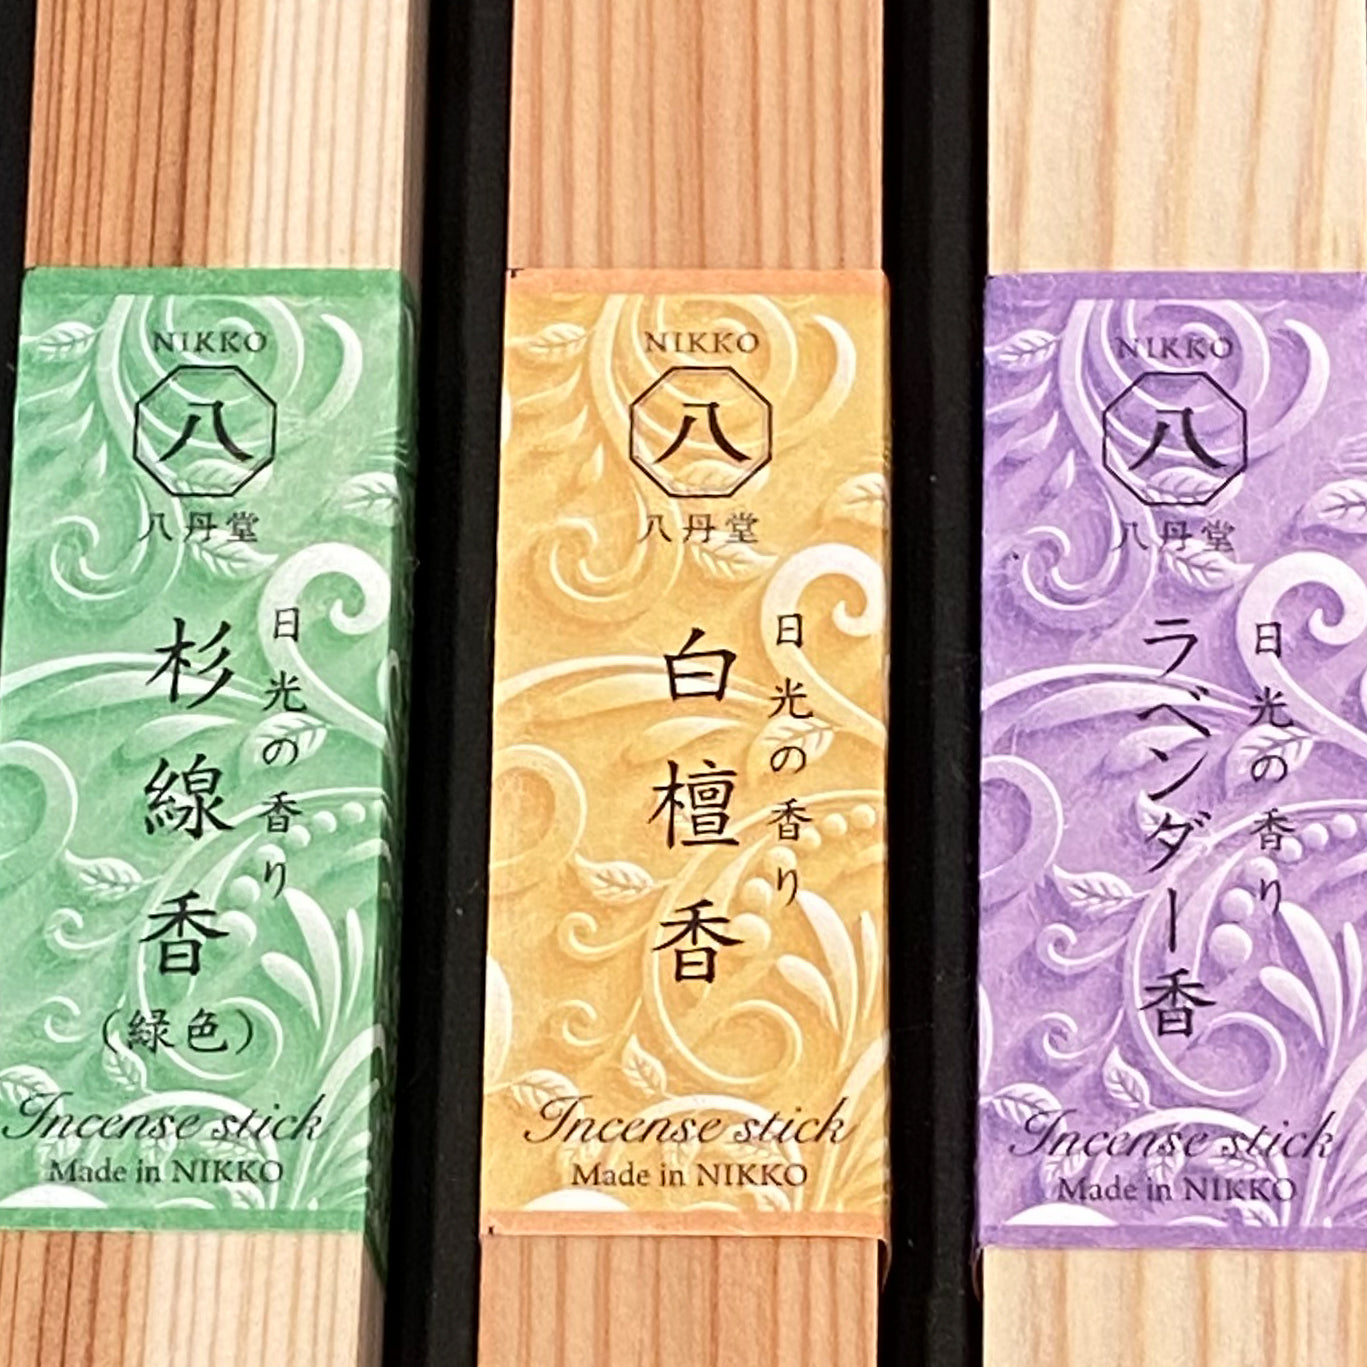 Japanese Cedarwood Incense Gift Sets_Lifestyle